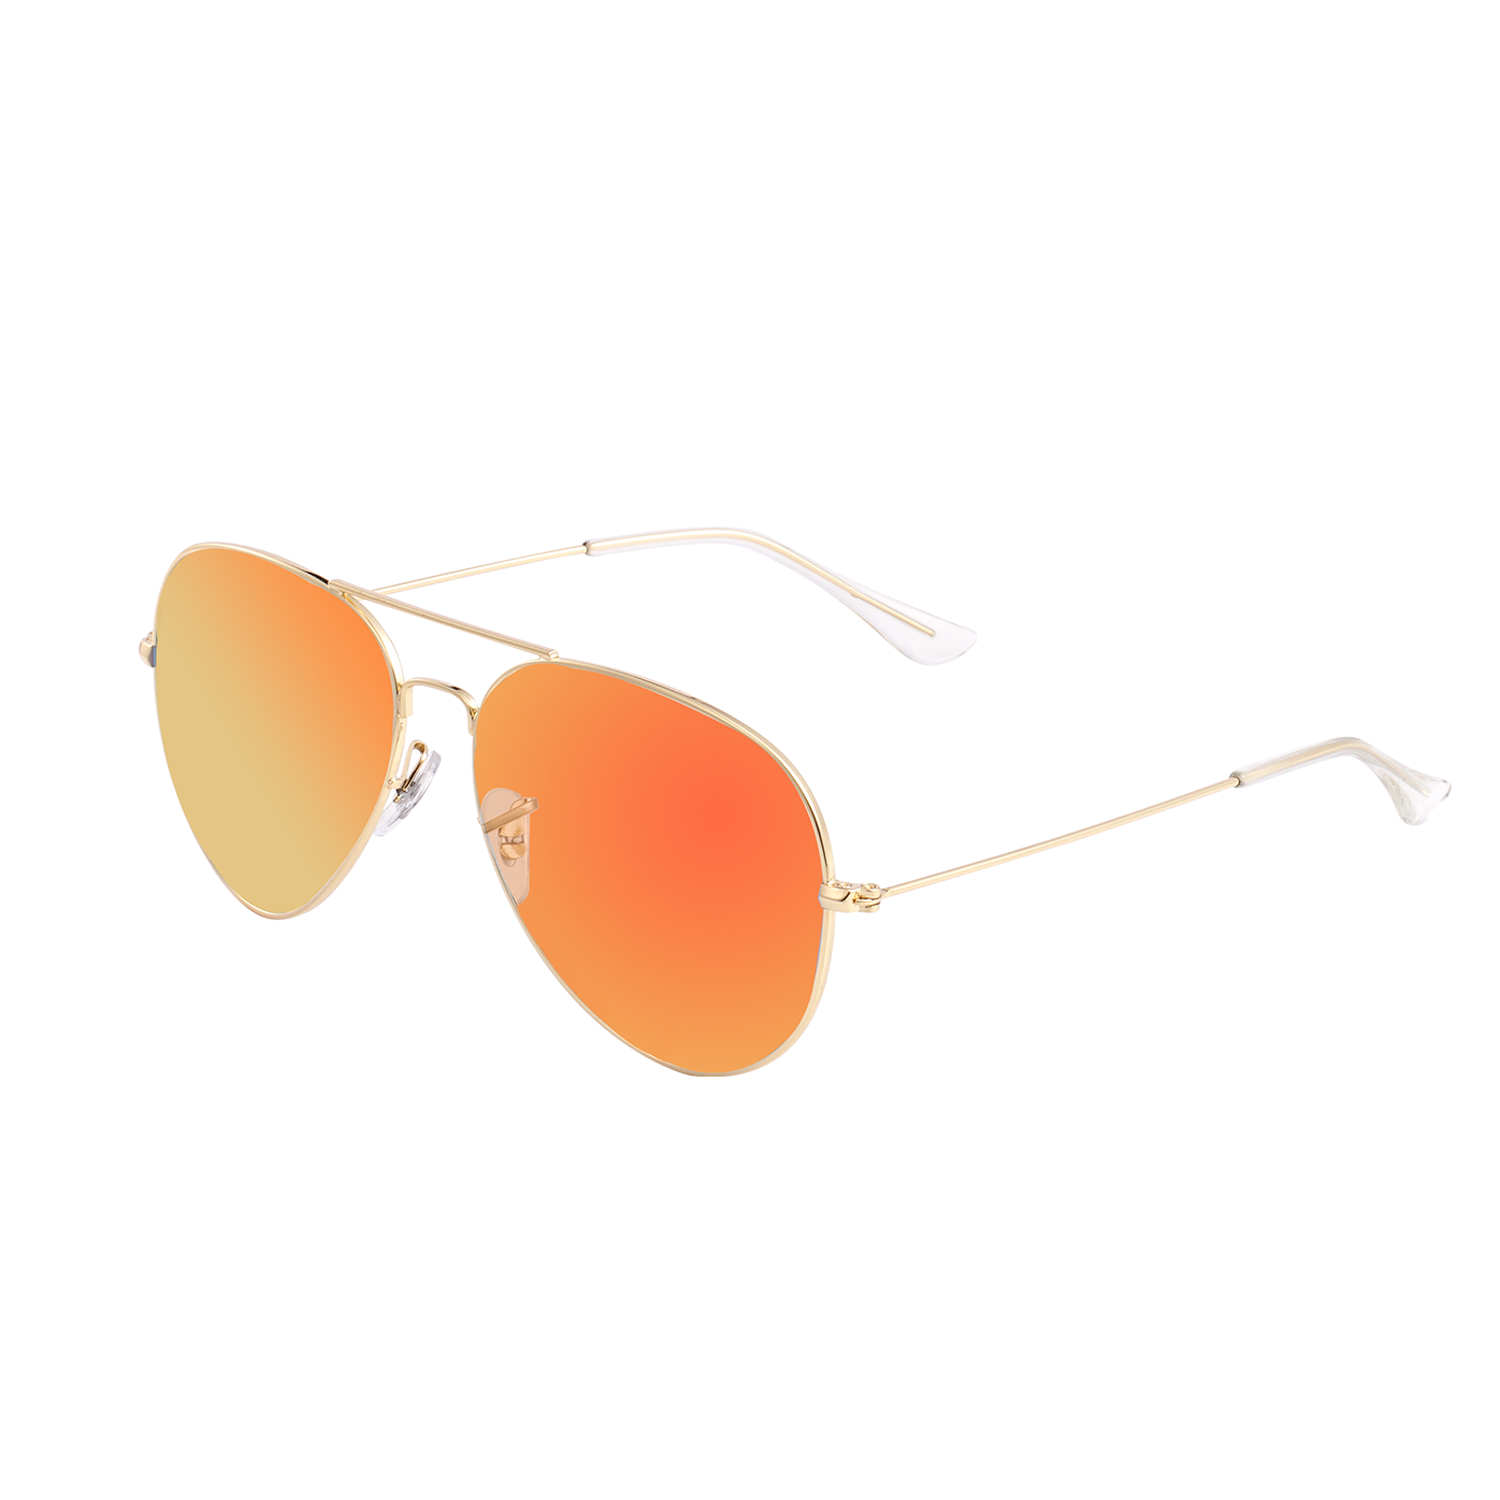 Designer Sunglasses Online. Unisex Sunglasses | Contrado